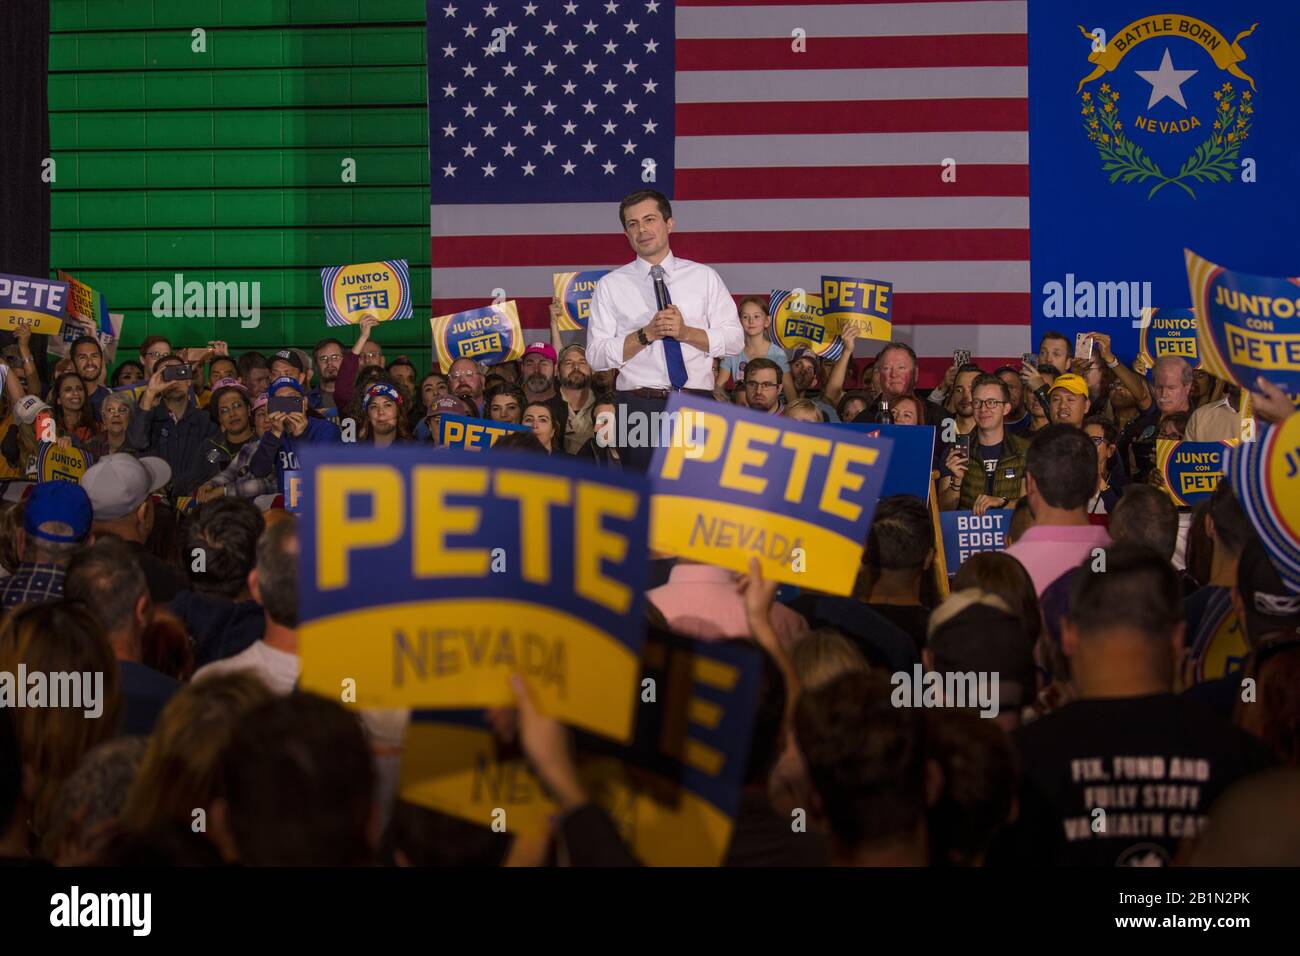 16 febbraio 2020, LAS VEGAS, NEVADA, USA - Sindaco Pete Buttigieg campagne per il presidente in un rally di Las Vegas prima del Nevada Caucus Foto Stock